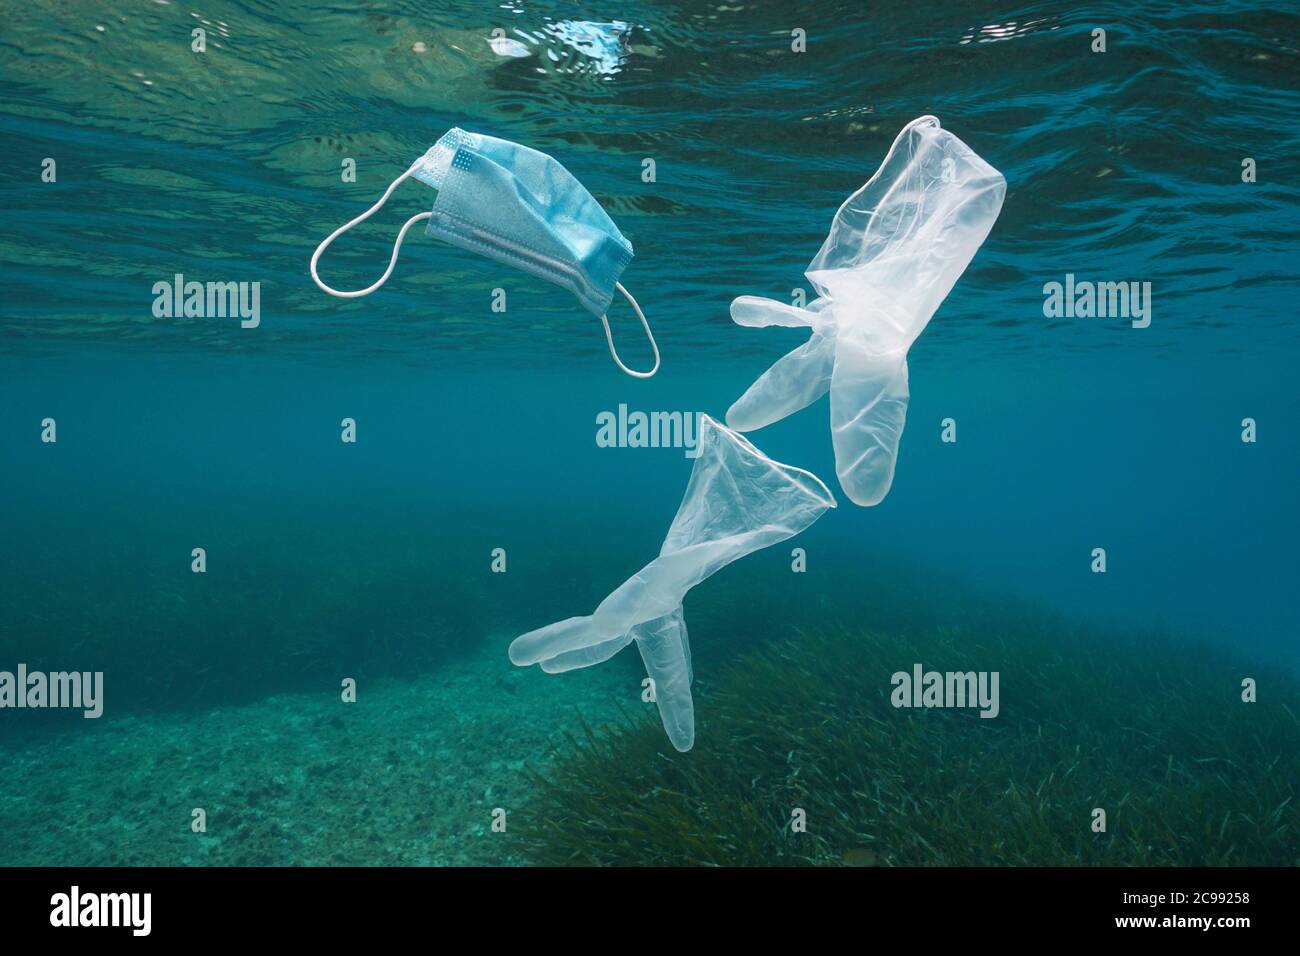 Gants jetables et masque facial sous l'eau, pollution des déchets plastiques dans la mer depuis la pandémie du coronavirus COVID-19 Banque D'Images